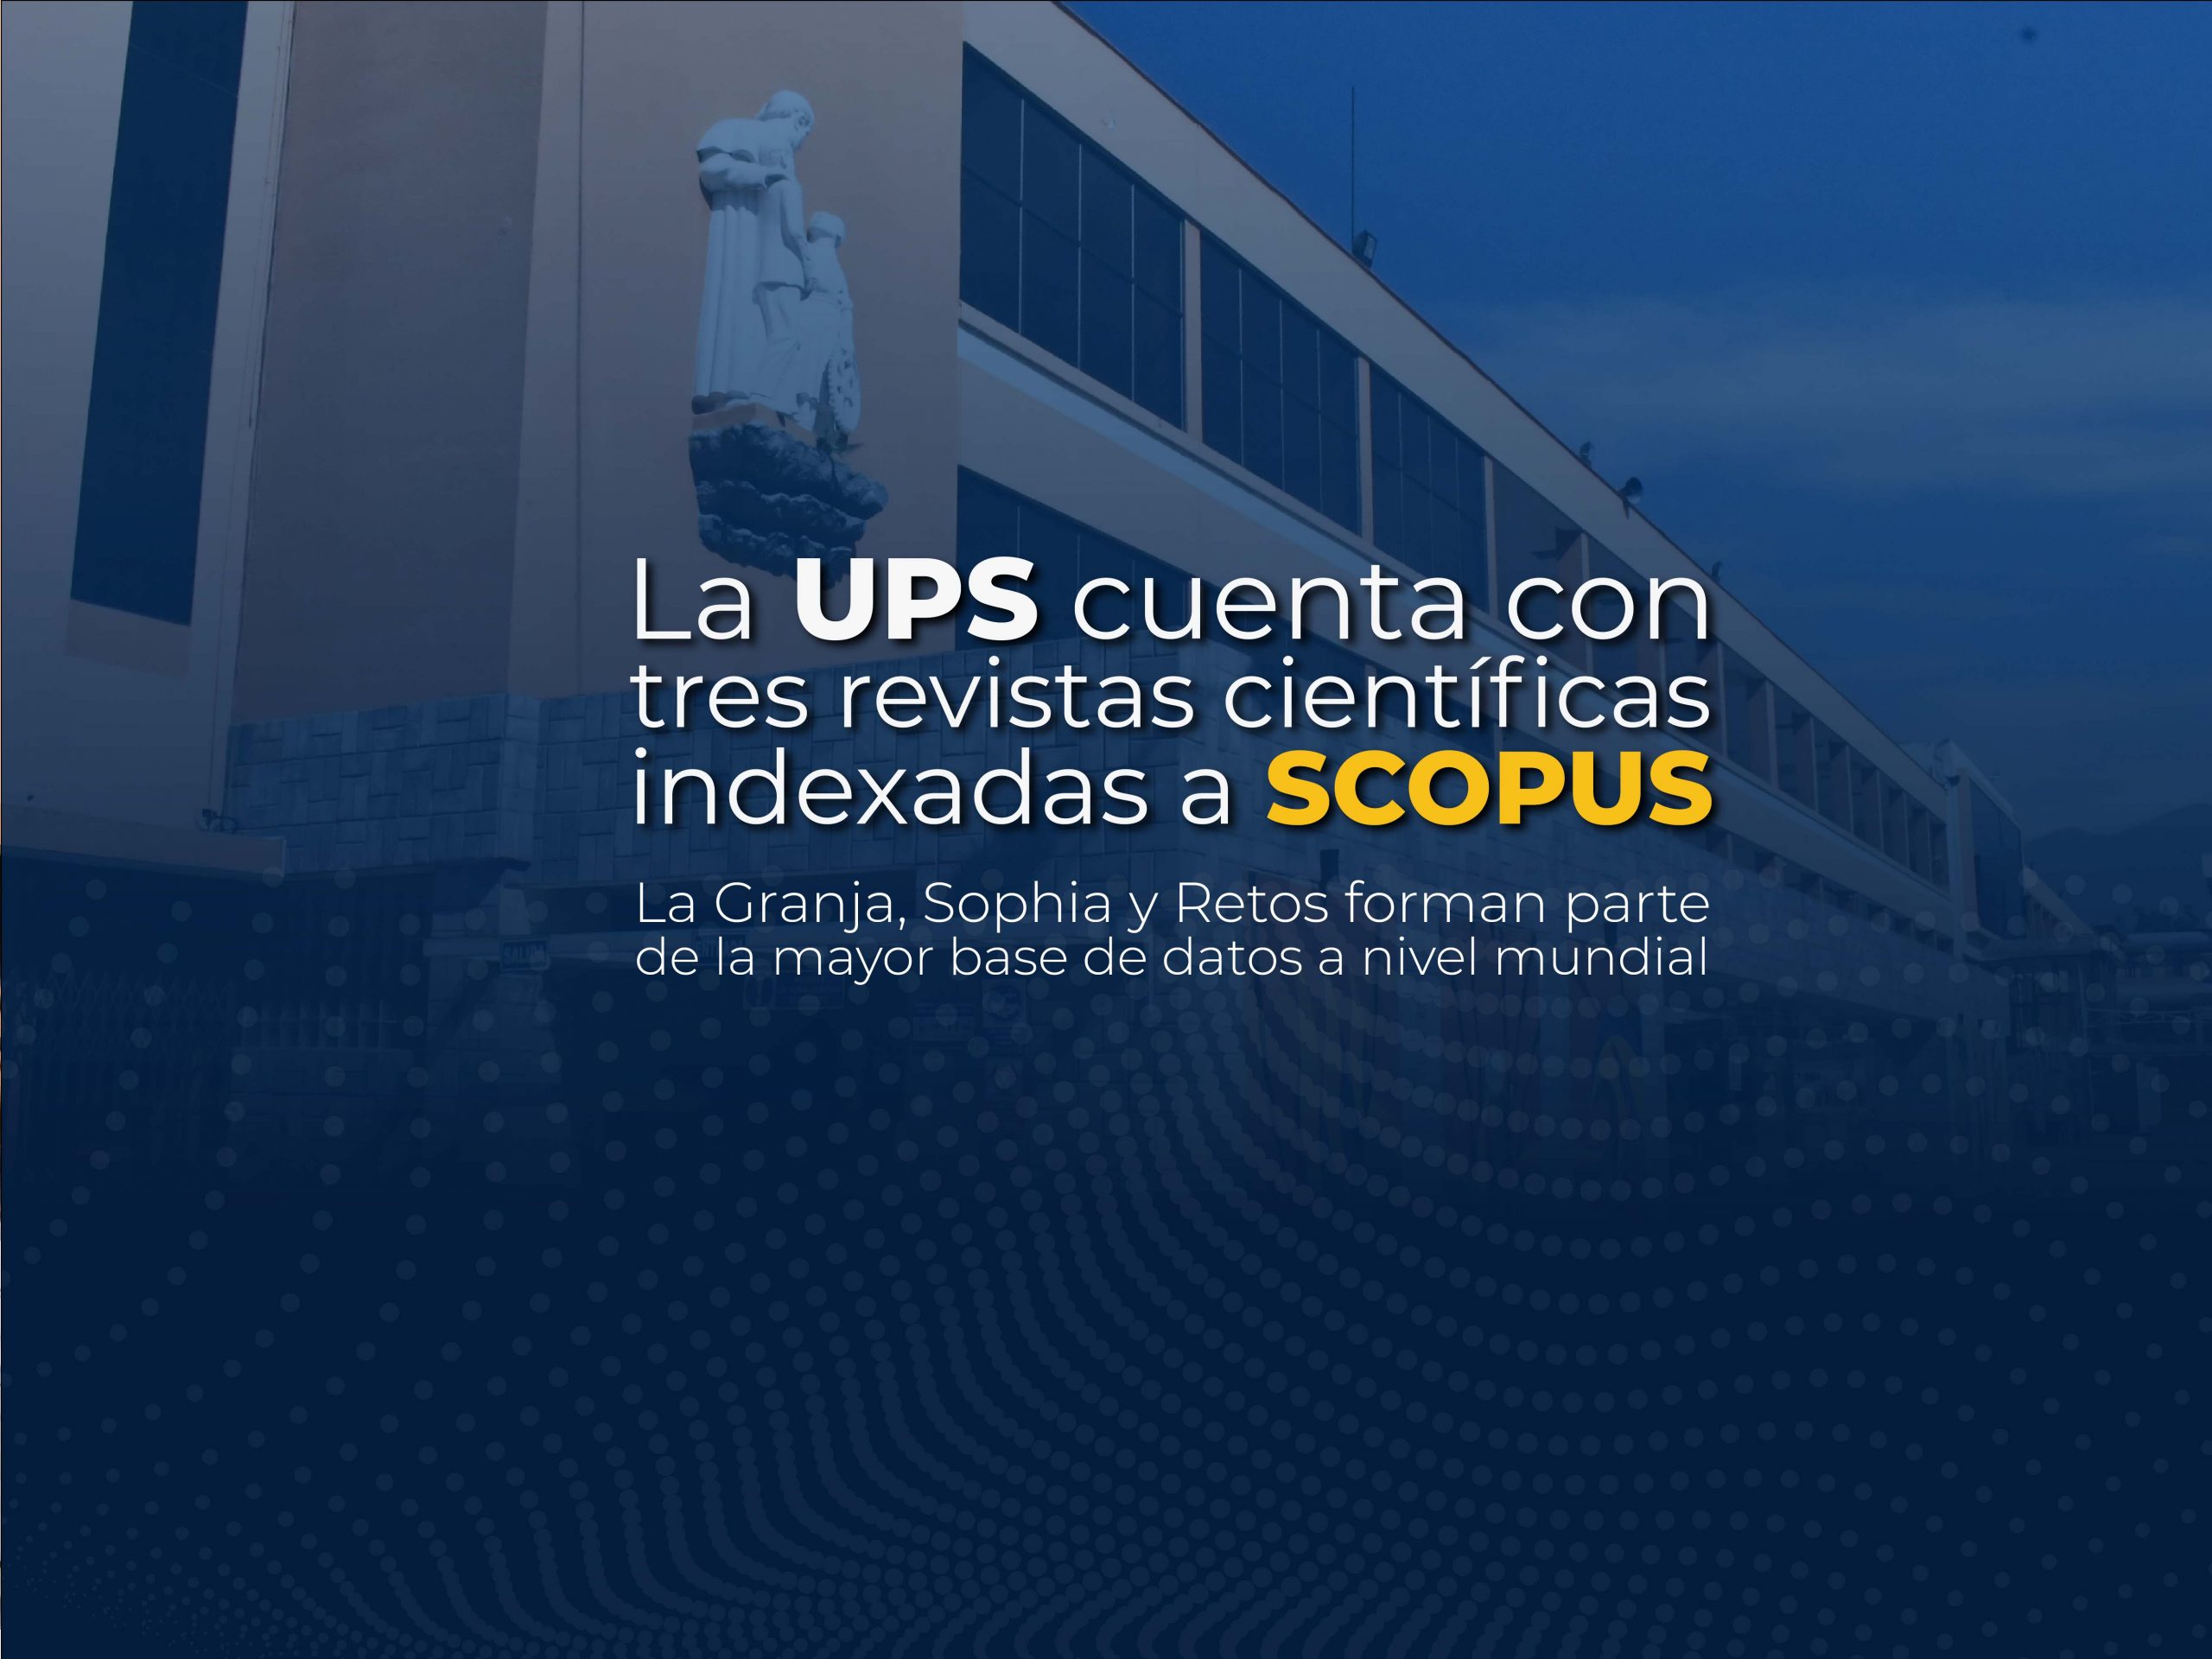 La UPS cuenta con tres revistas indexadas en Scopus